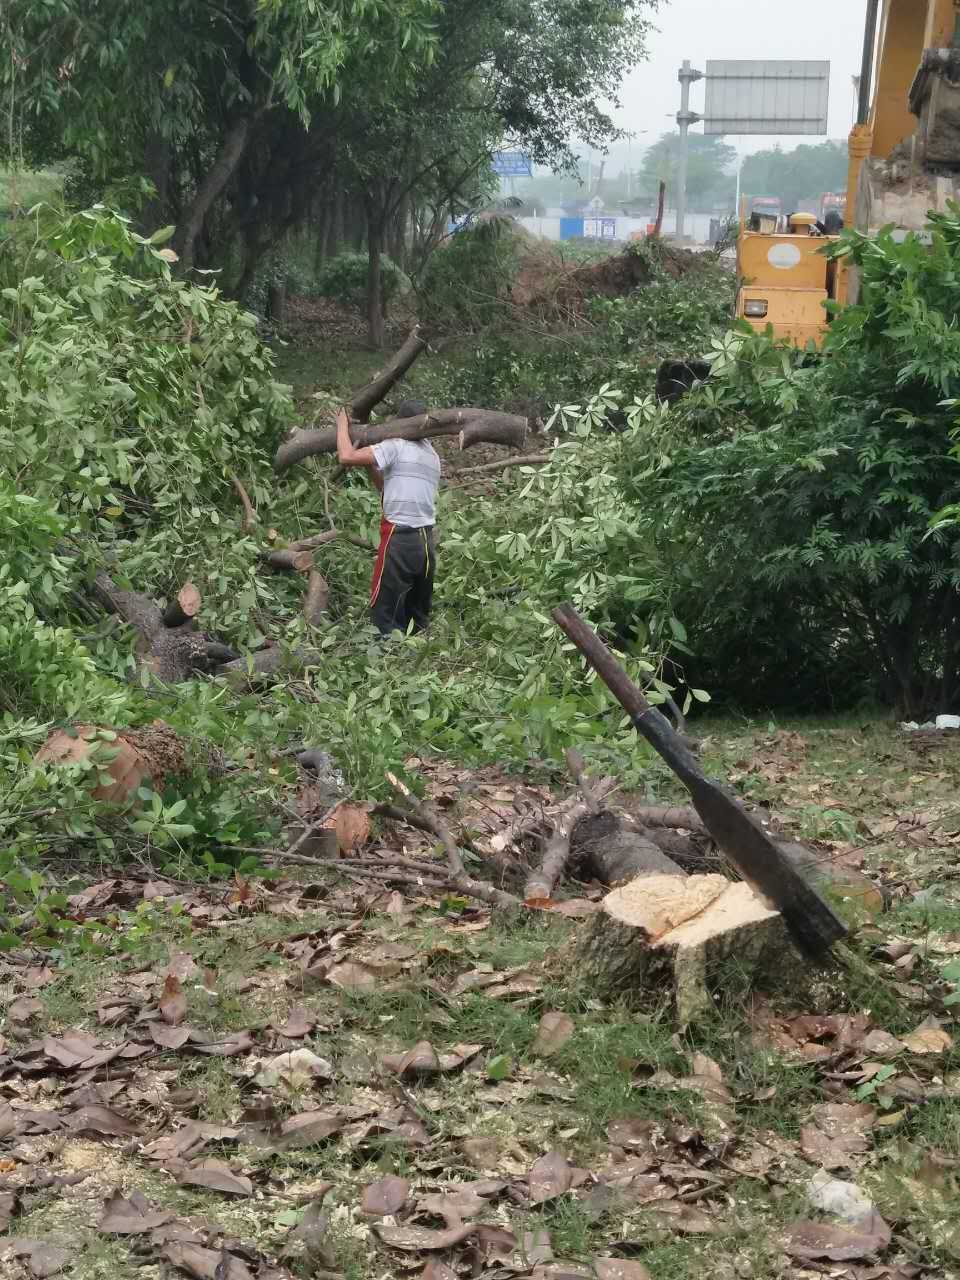 广州 专业砍树 收购杂树可免费砍树 砍树团队 砍树工程团队